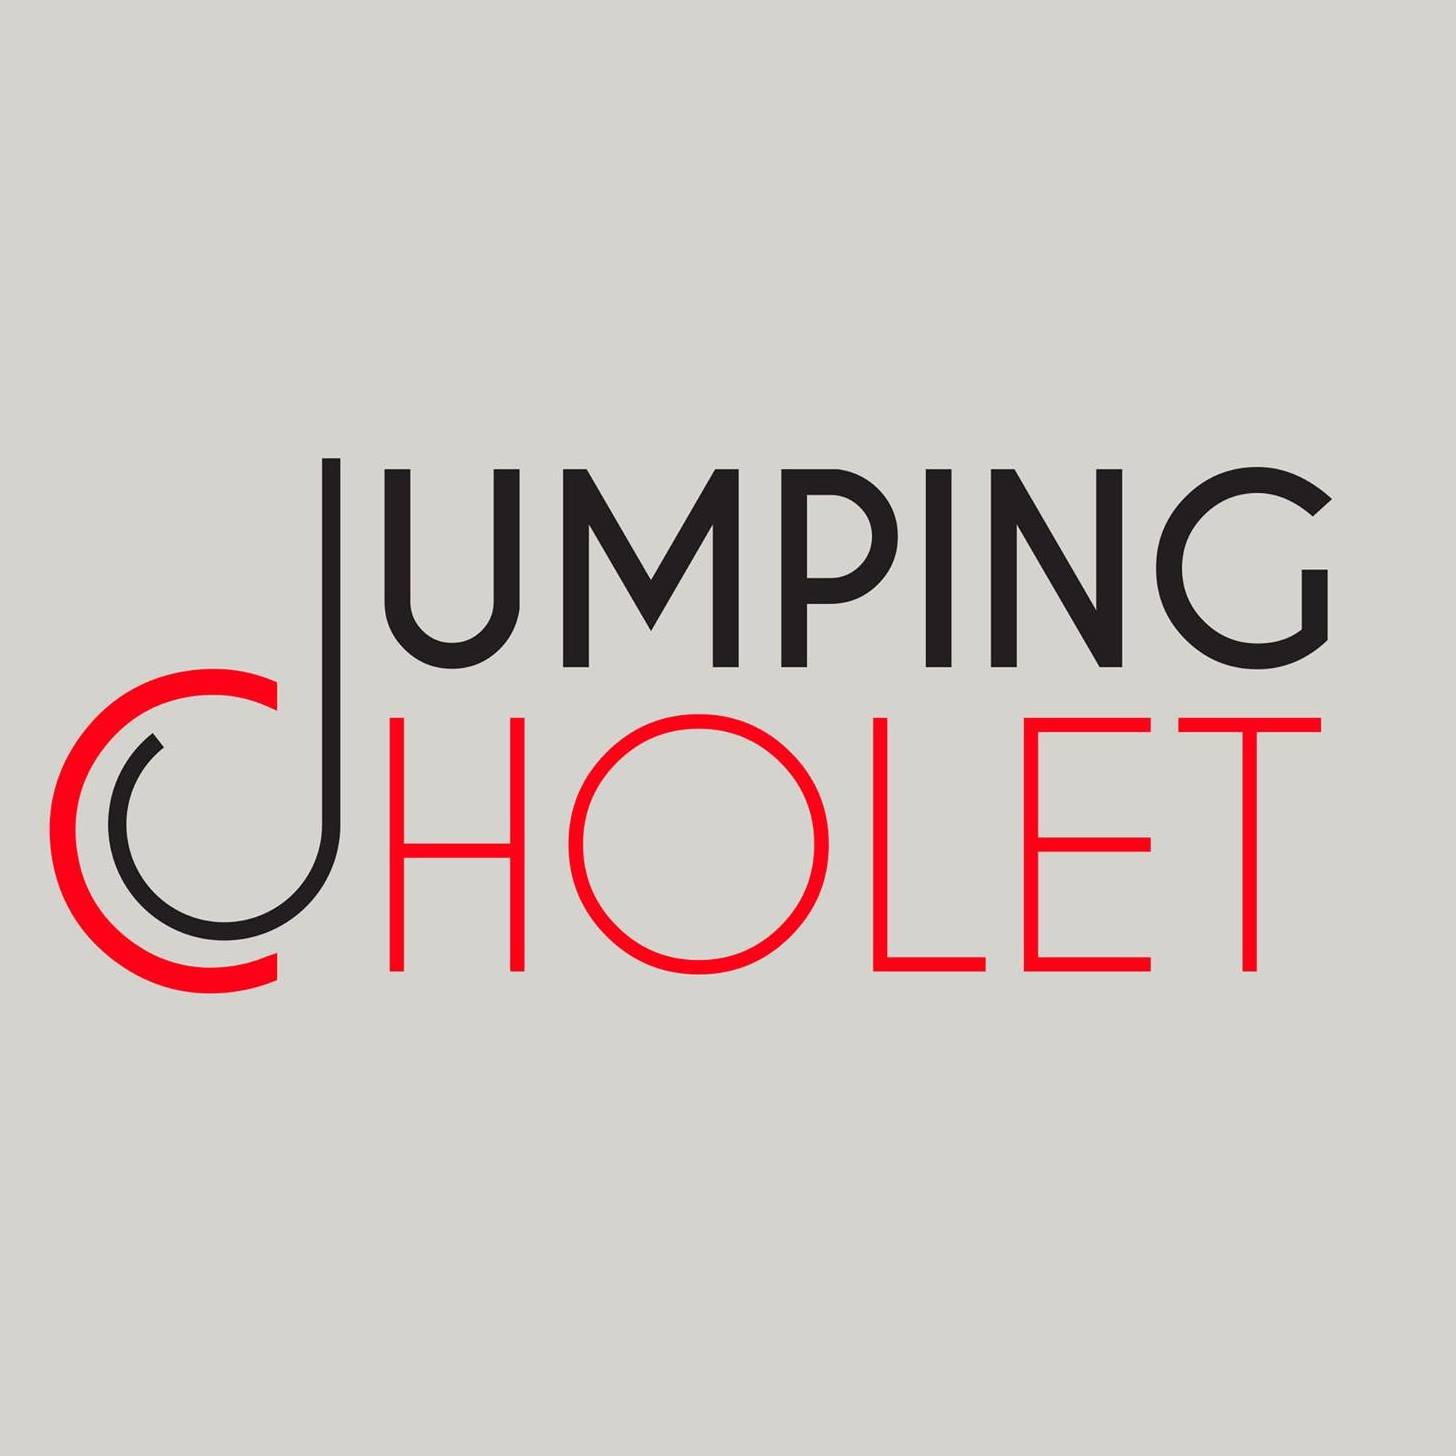 Jumping Cholet